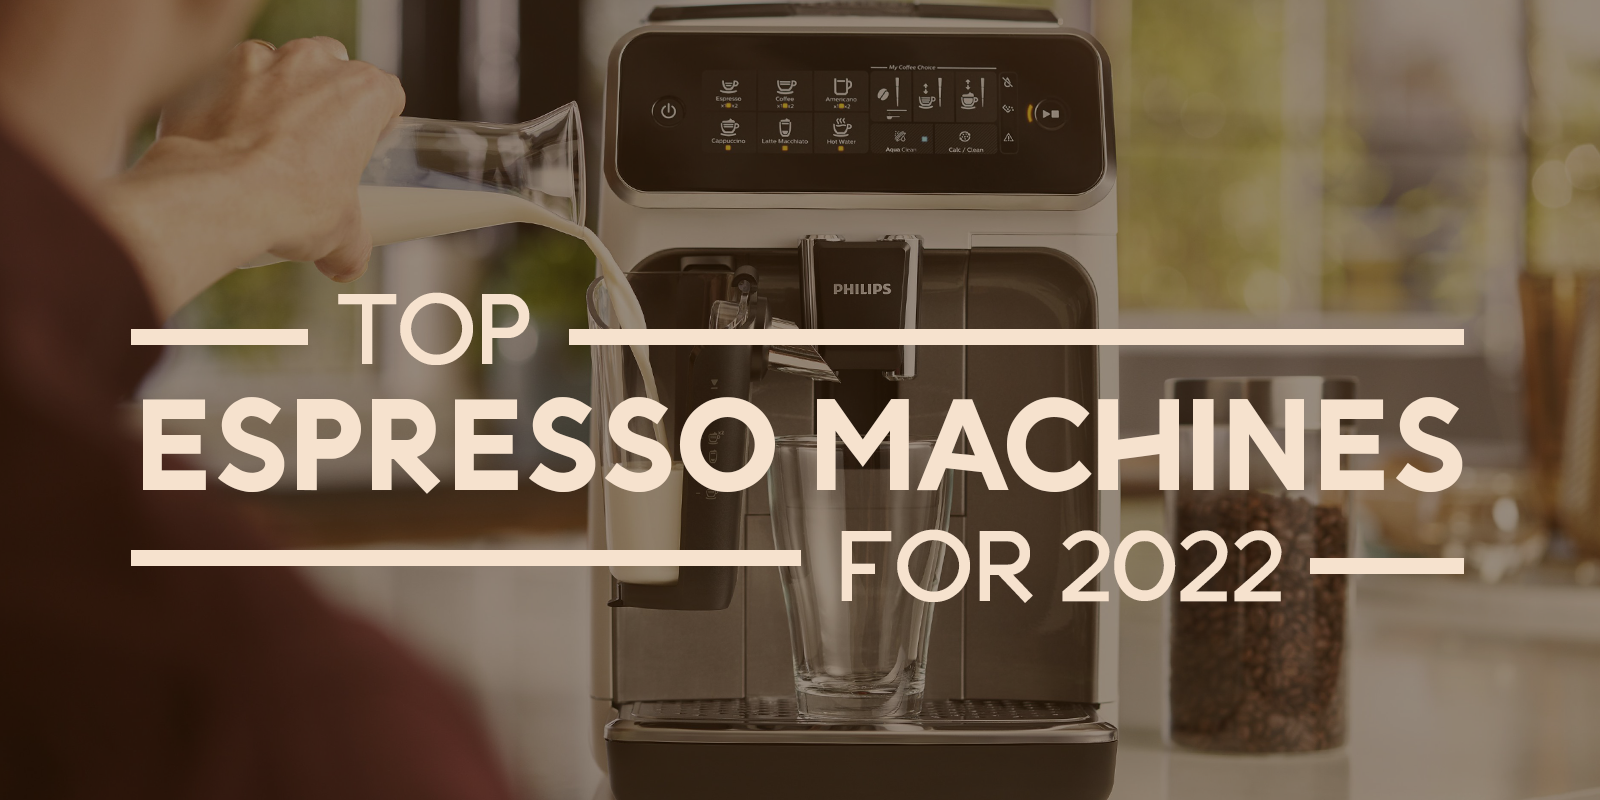 Open Box Philips Saeco 4300 Series Superautomatic Espresso Machine CMF -  Espresso Machine Experts